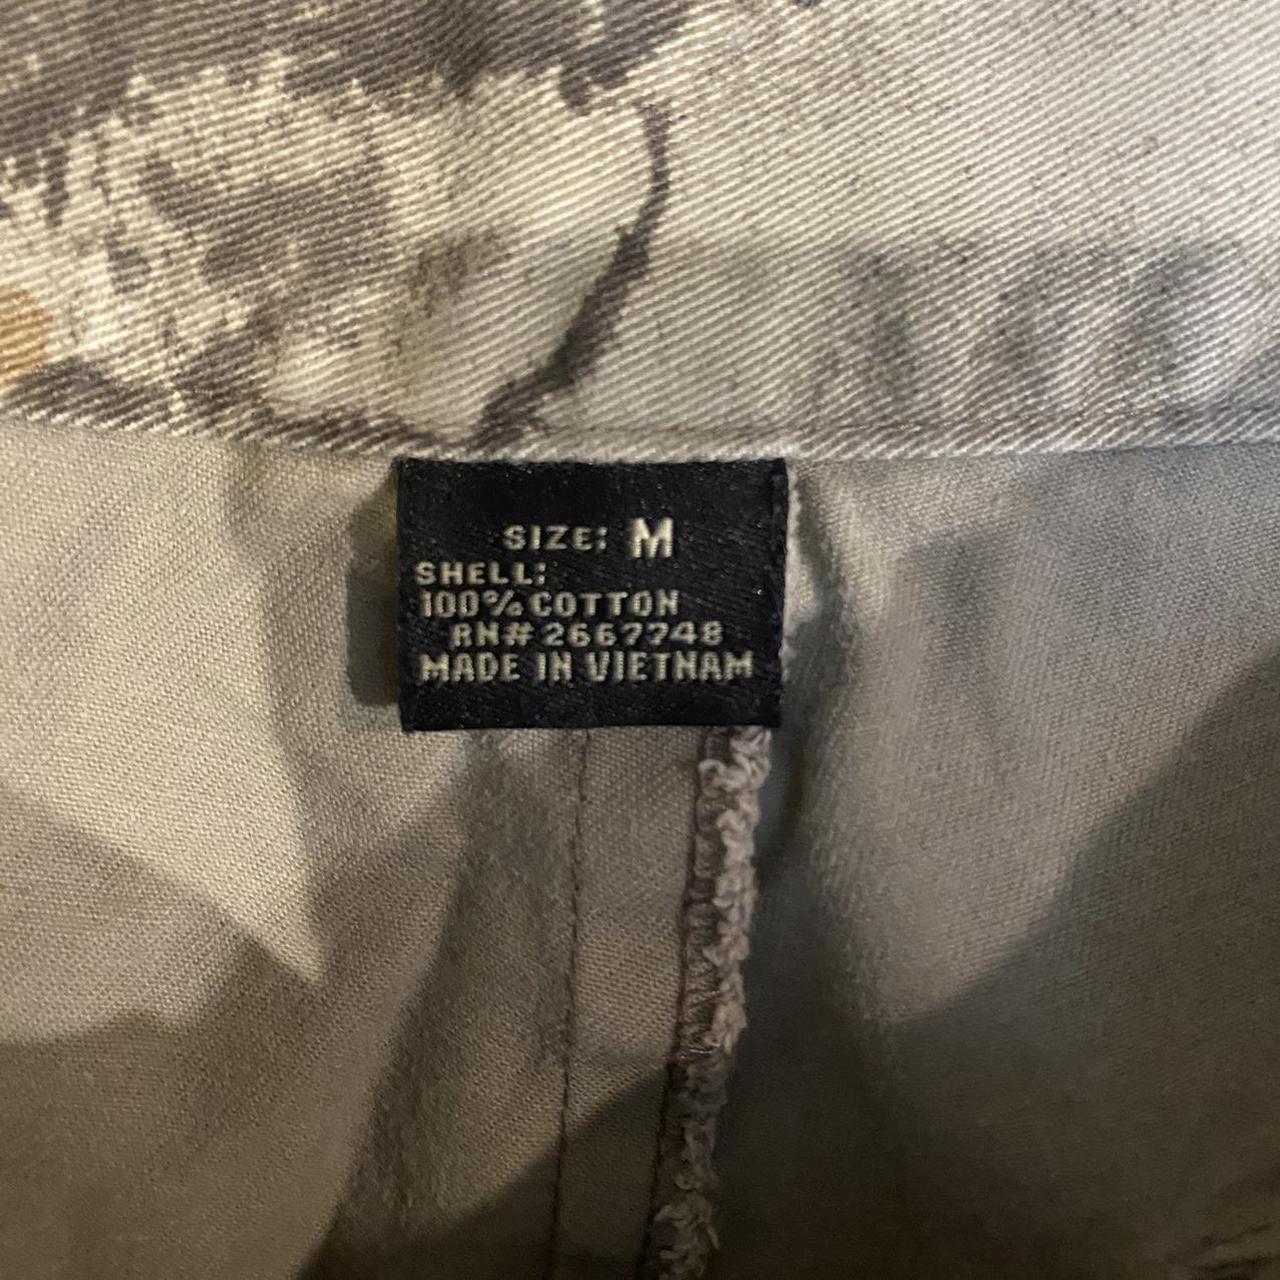 Vintage camo cargo pants men’s size M - Depop